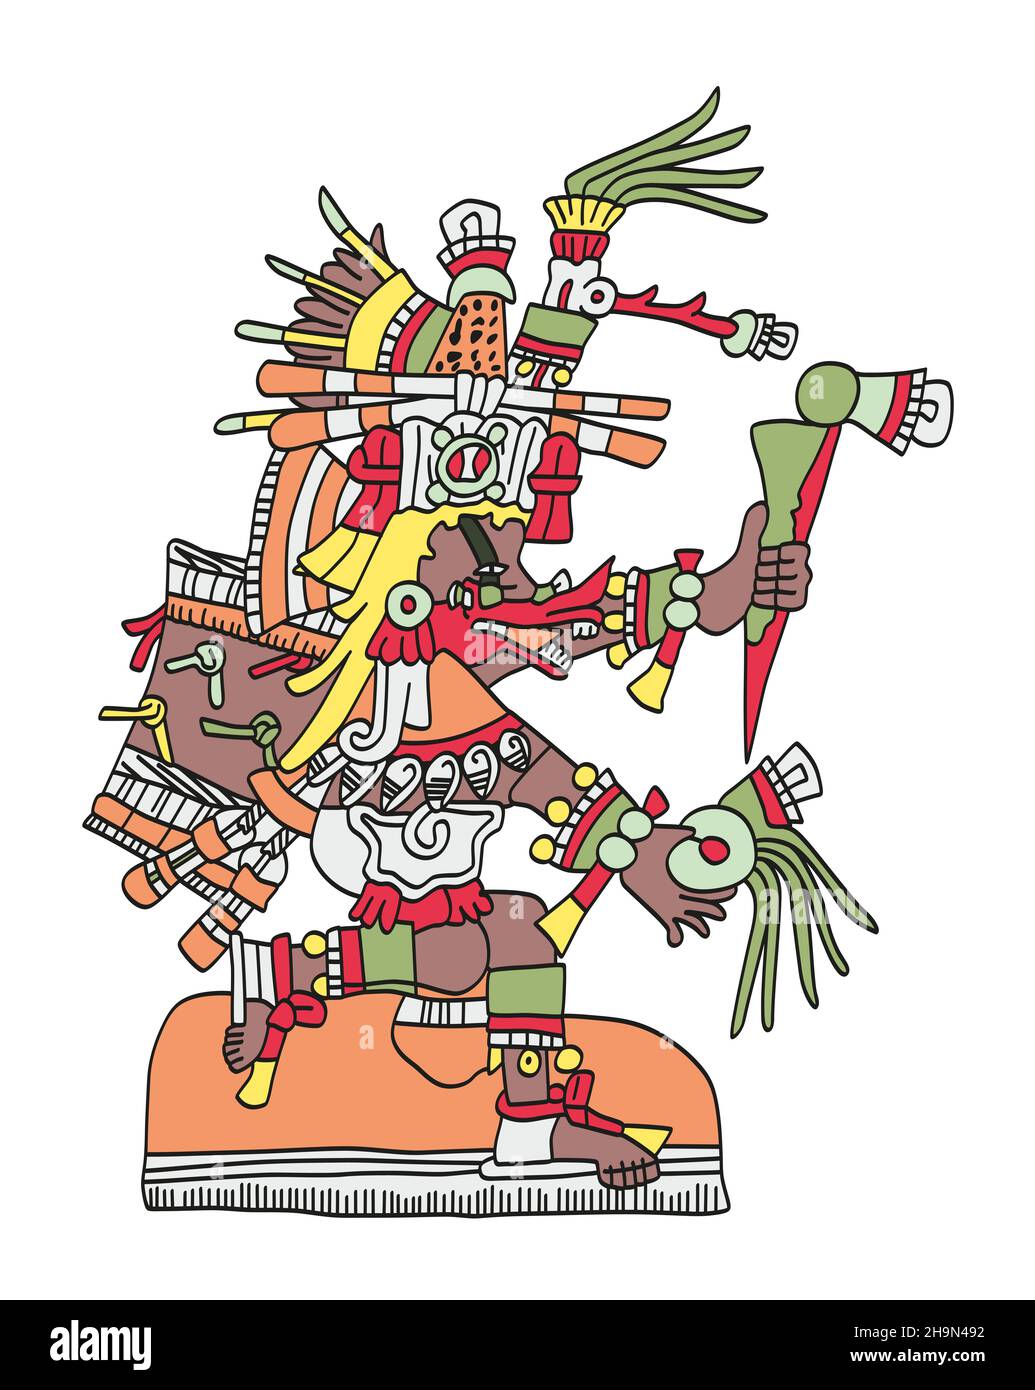 Quetzalcoatl, wie im Codex Telleriano-Remensis dargestellt. Der aztekische gott bezog sich auf Wind, Weisheit und den Planeten Venus. Sein Name bedeutet gefiederte Schlange. Stockfoto